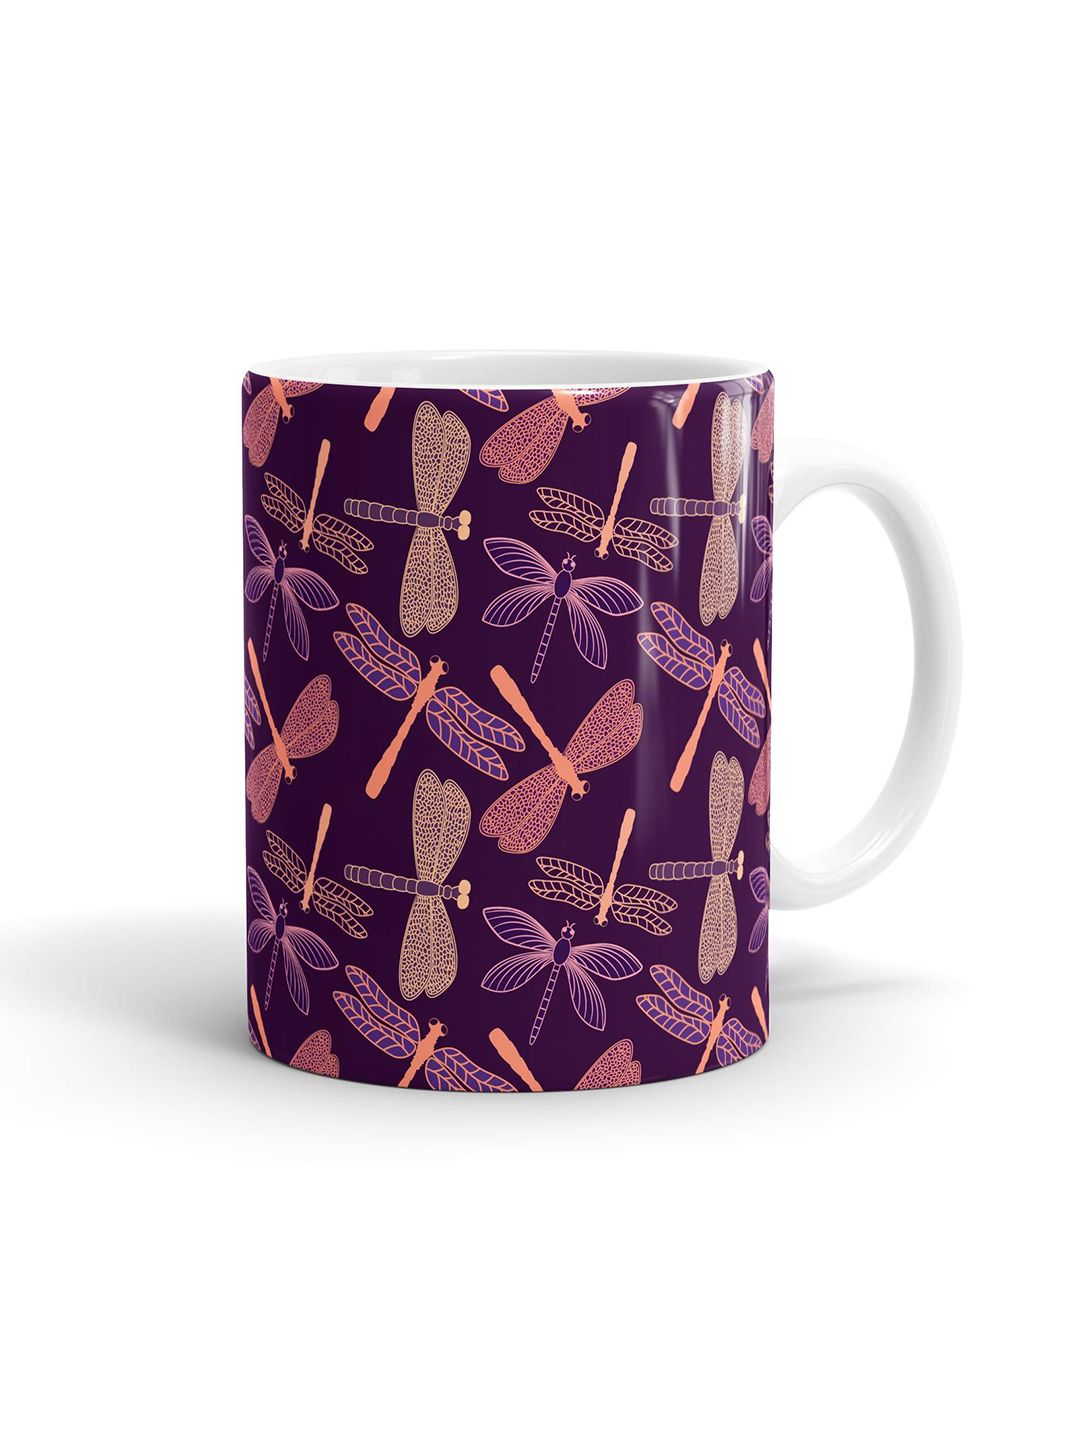 macmerise Violet & Pink Printed Ceramic Glossy Mug Price in India